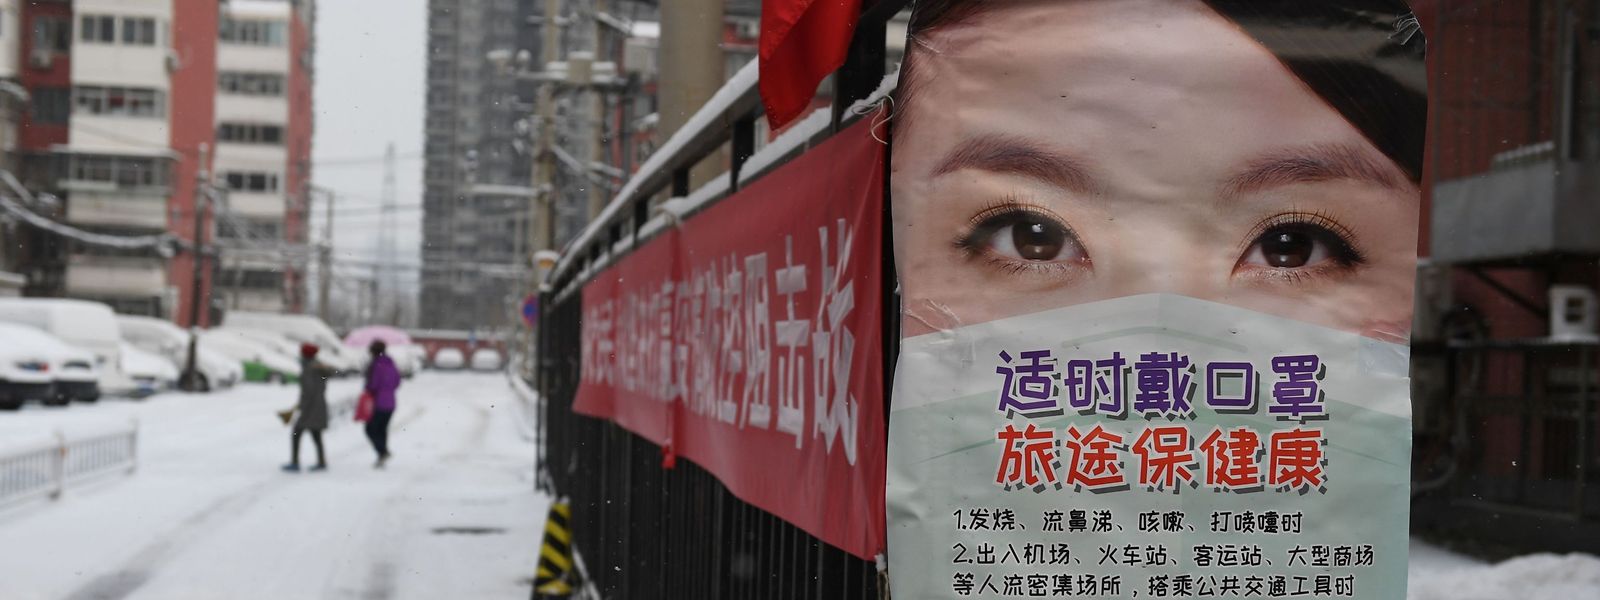 In China informieren Poster die Bürger, wie sie sich vor einer Infektion mit dem Coronavirus schützen können.